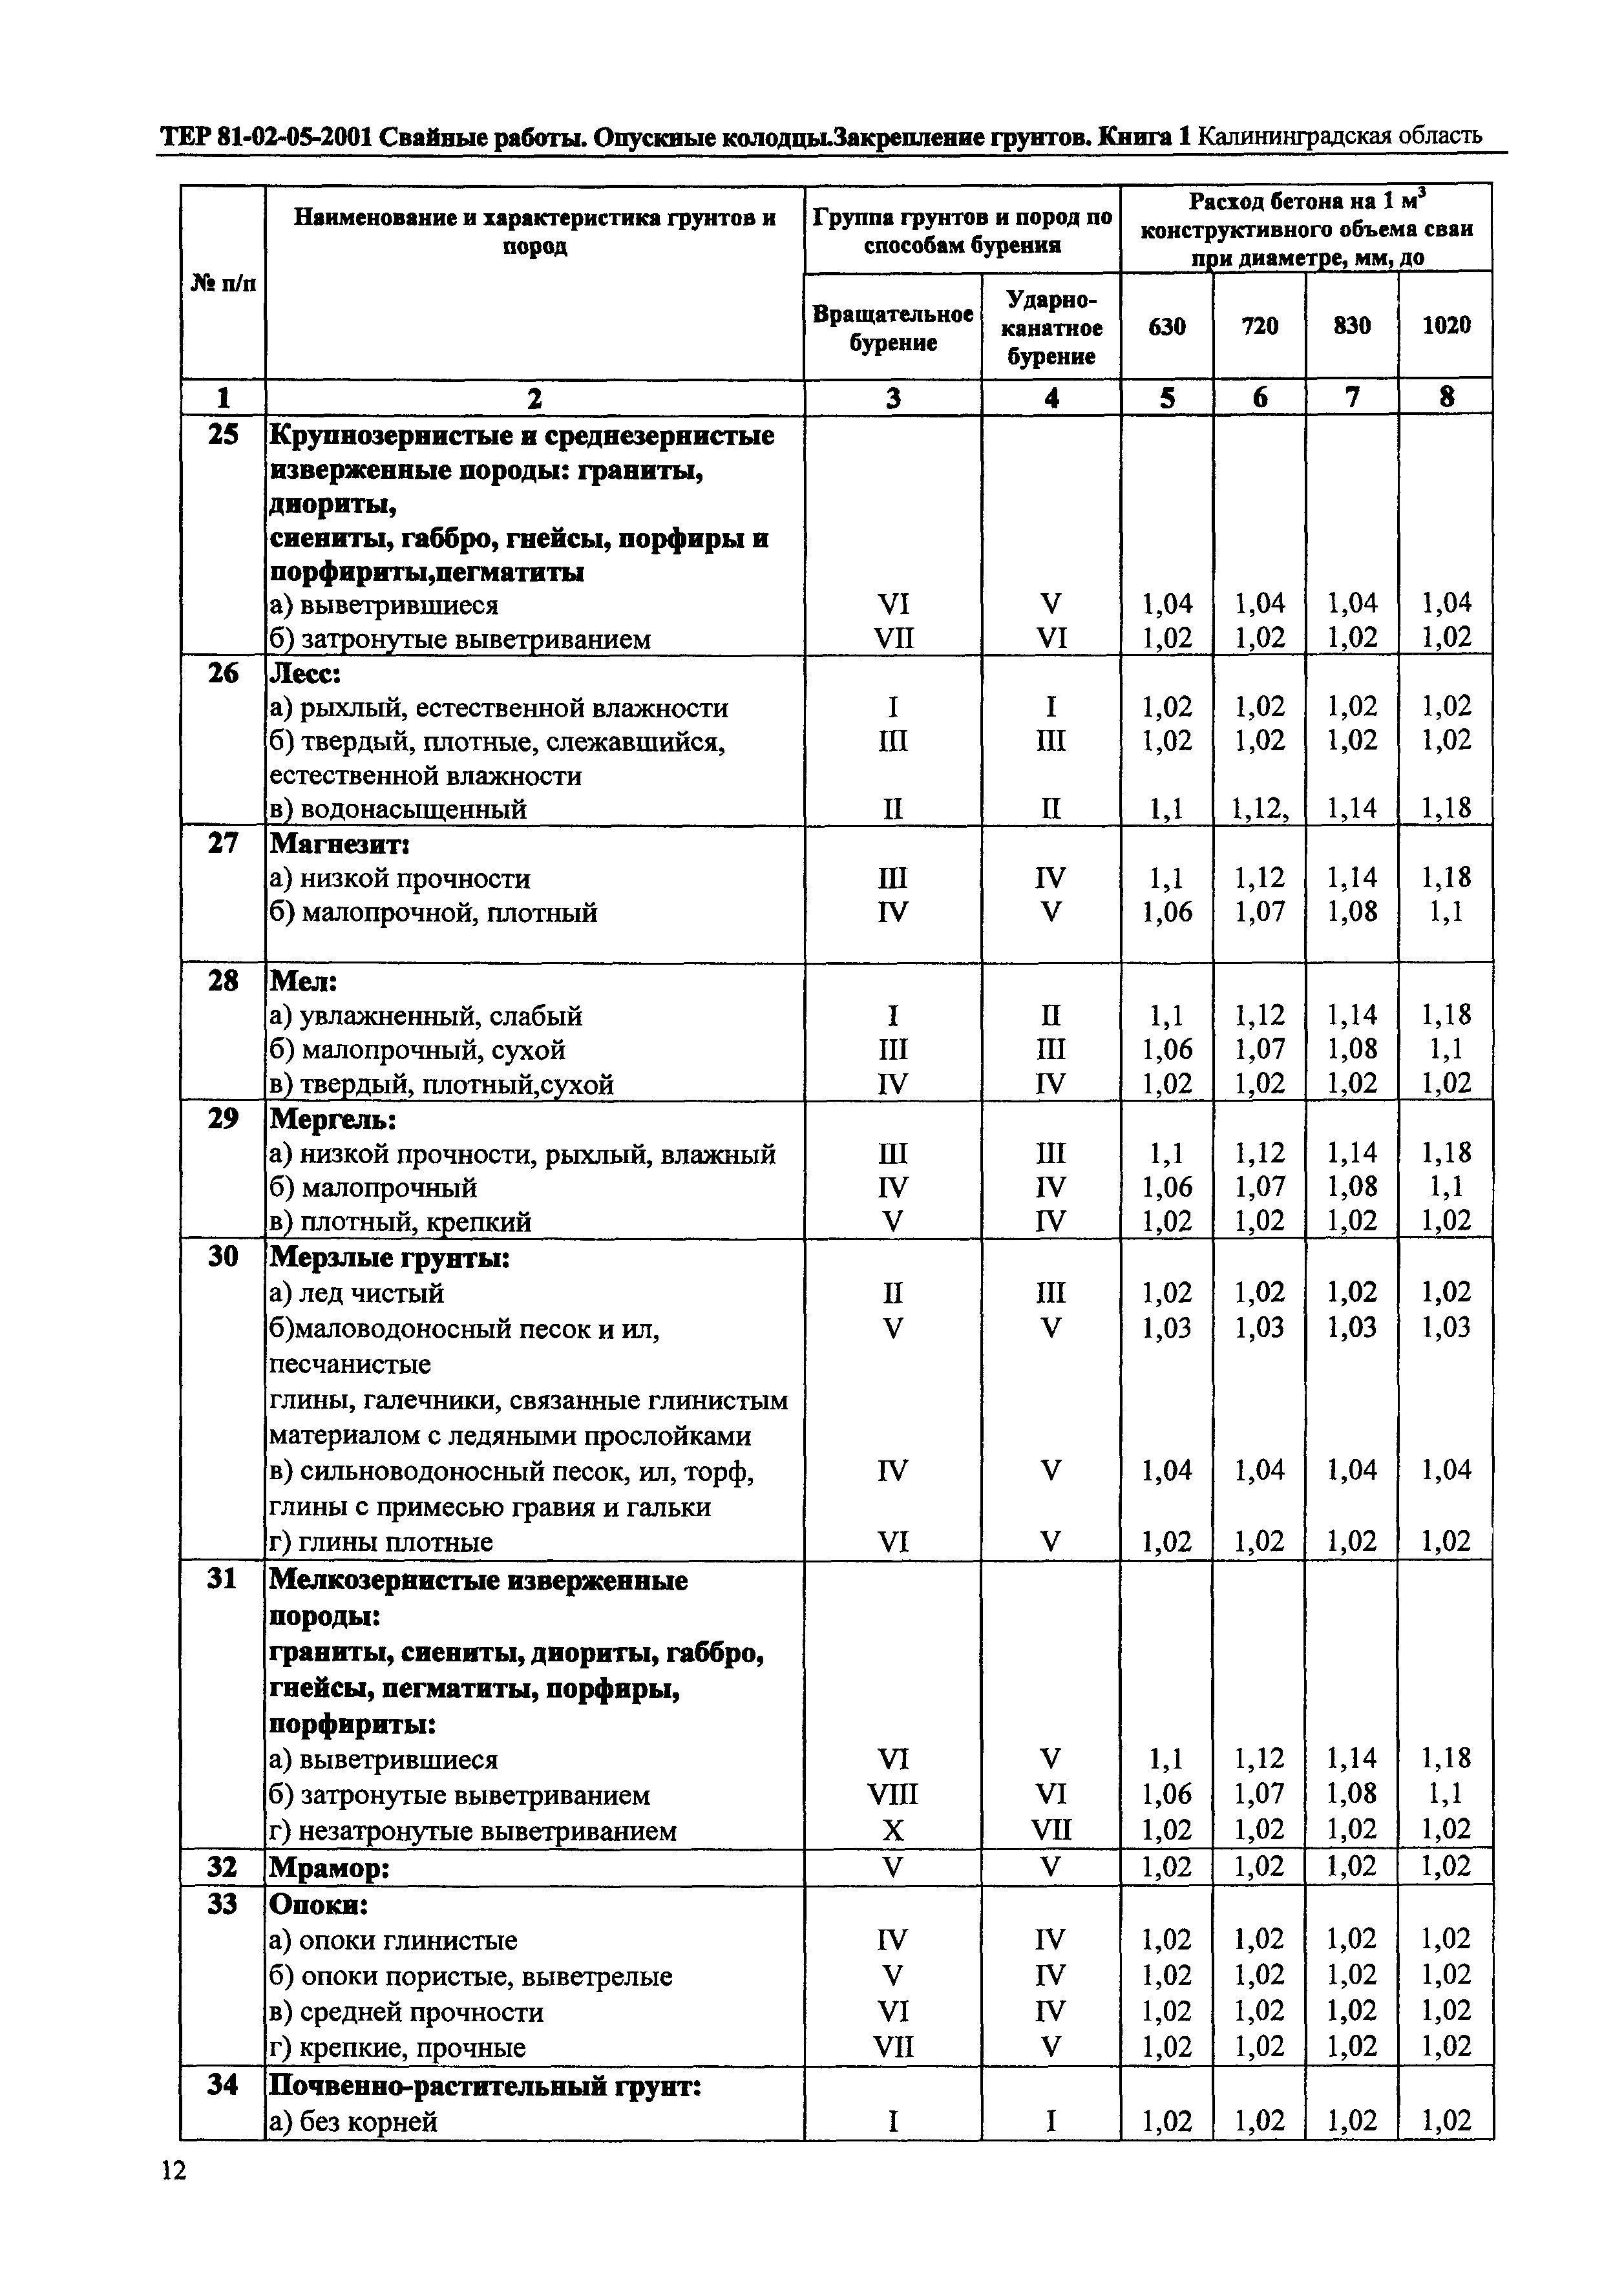 ТЕР Калининградской области 2001-05